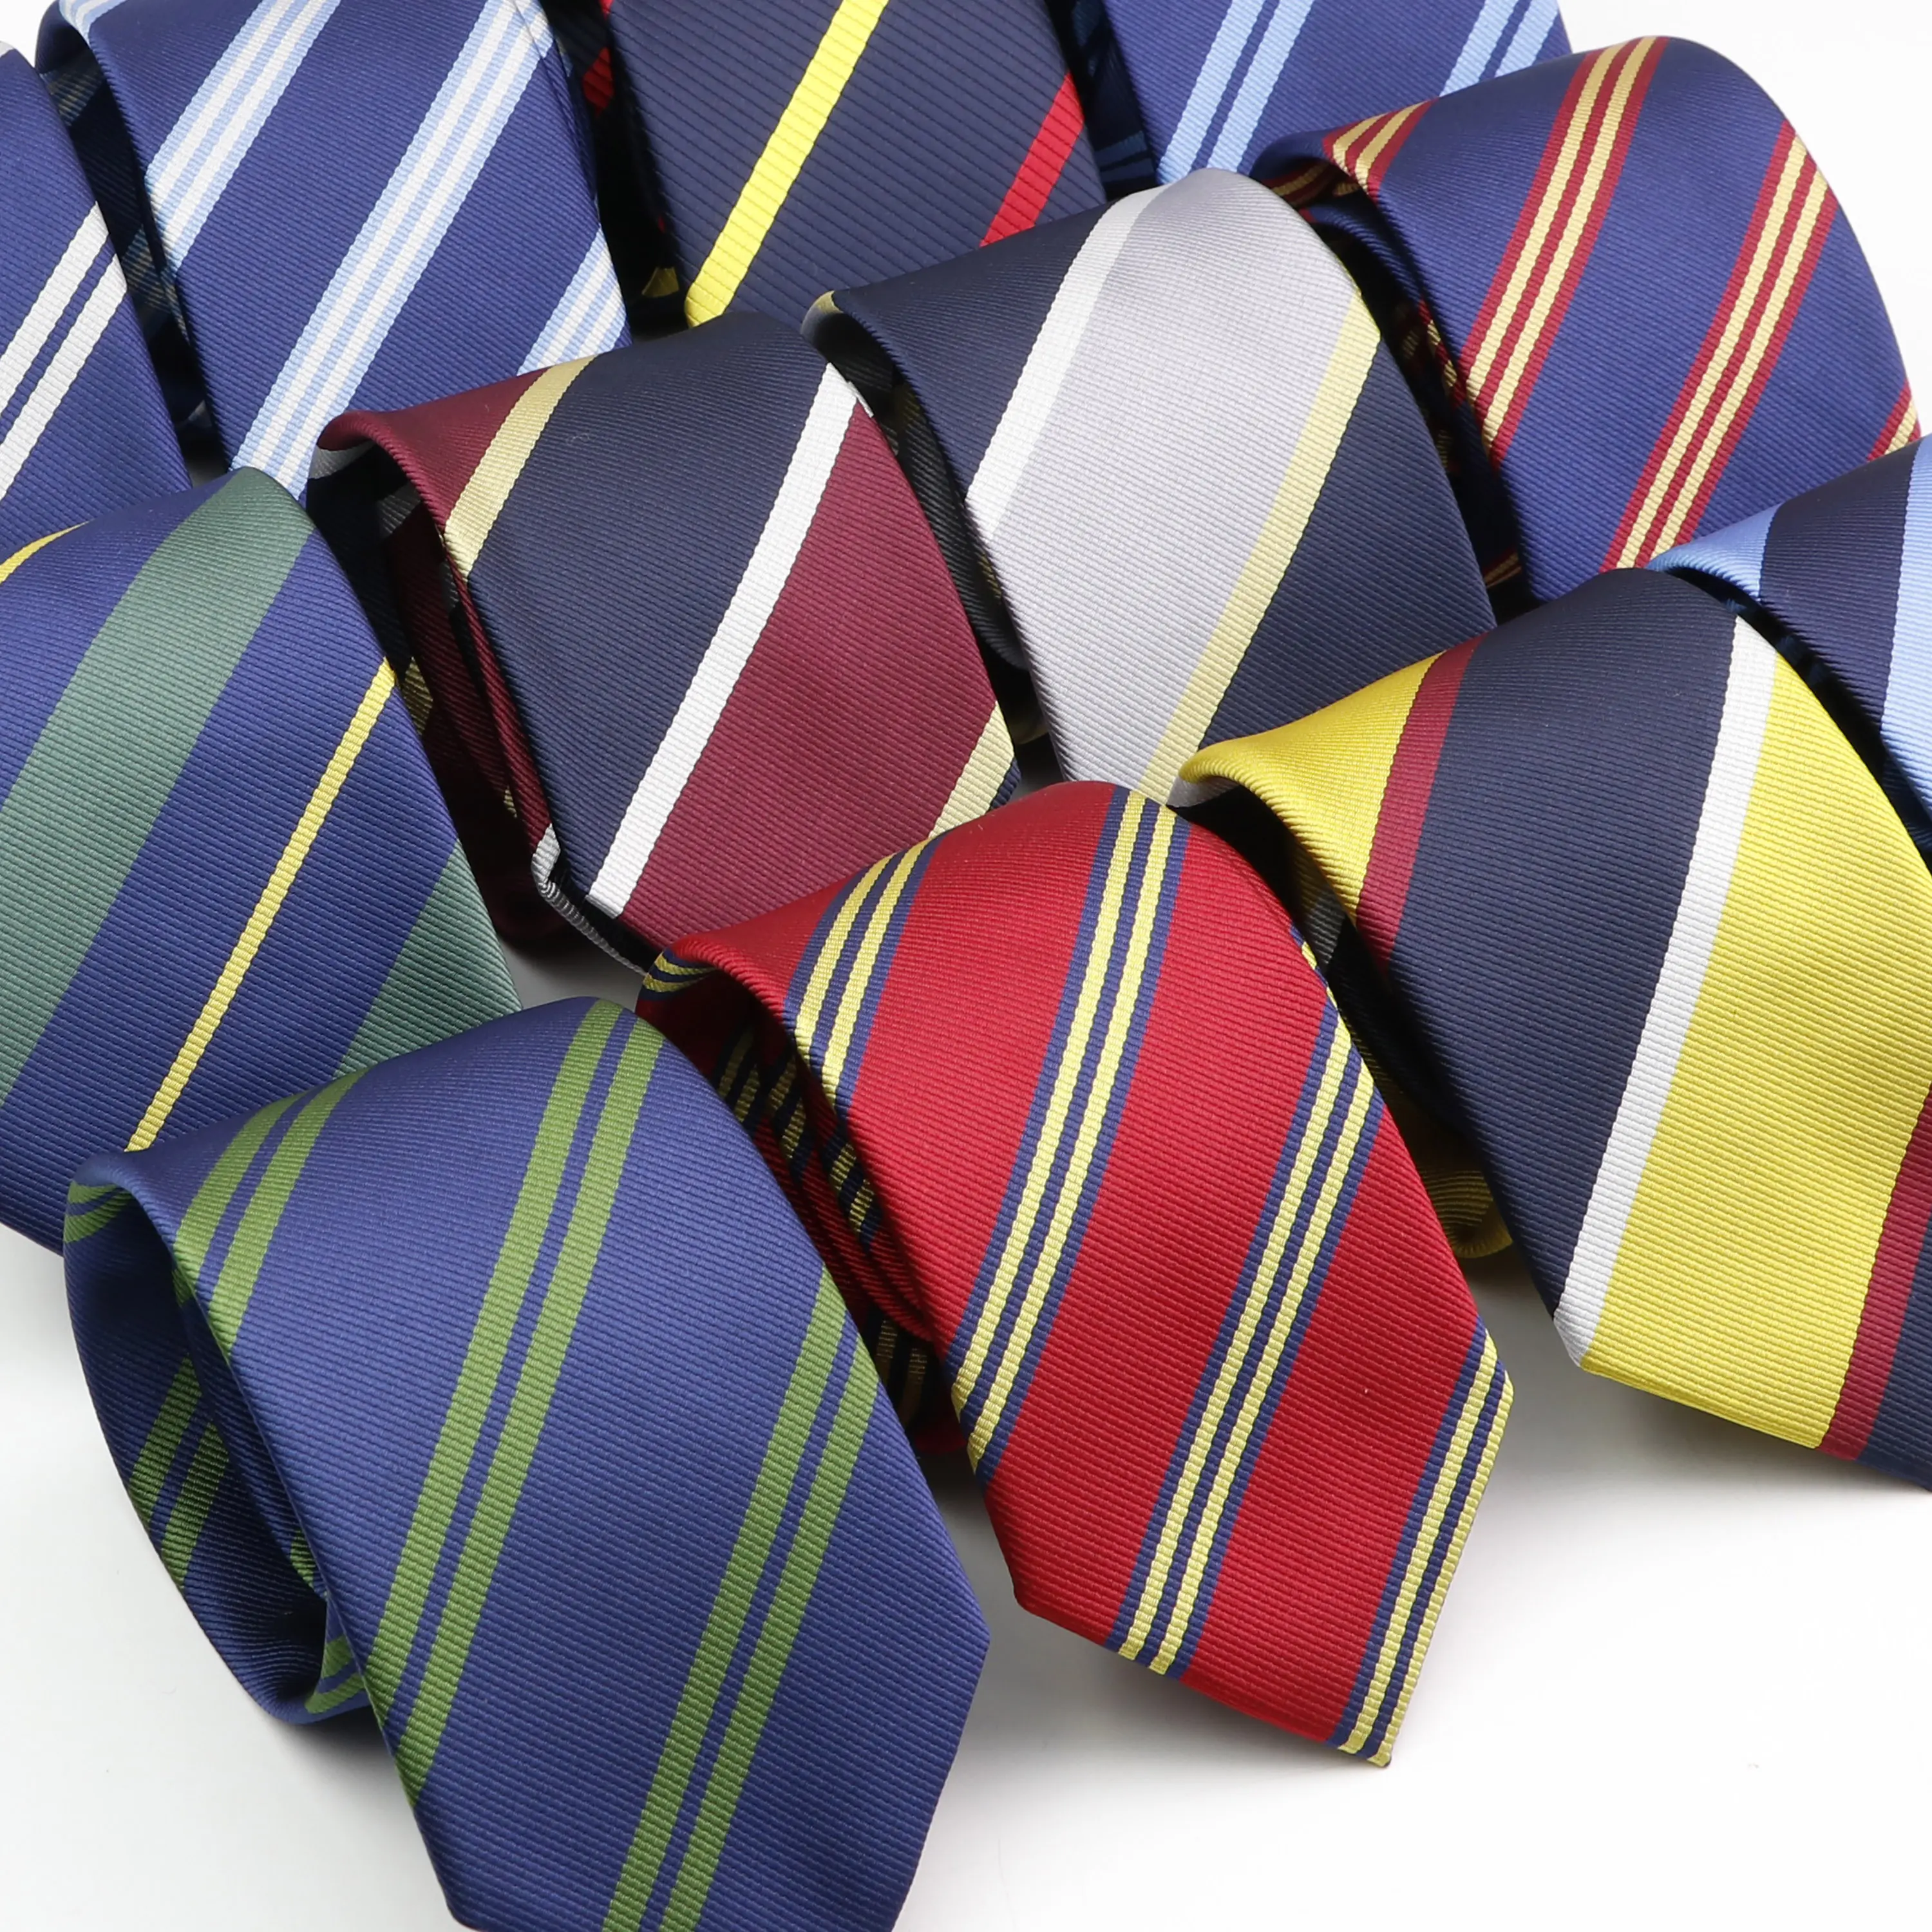 Neue klassische Herren Krawatten 7cm gestreifte Standard Krawatte für Mann formelle Business Luxus Hochzeits feier Kleid Krawatten Geschenk